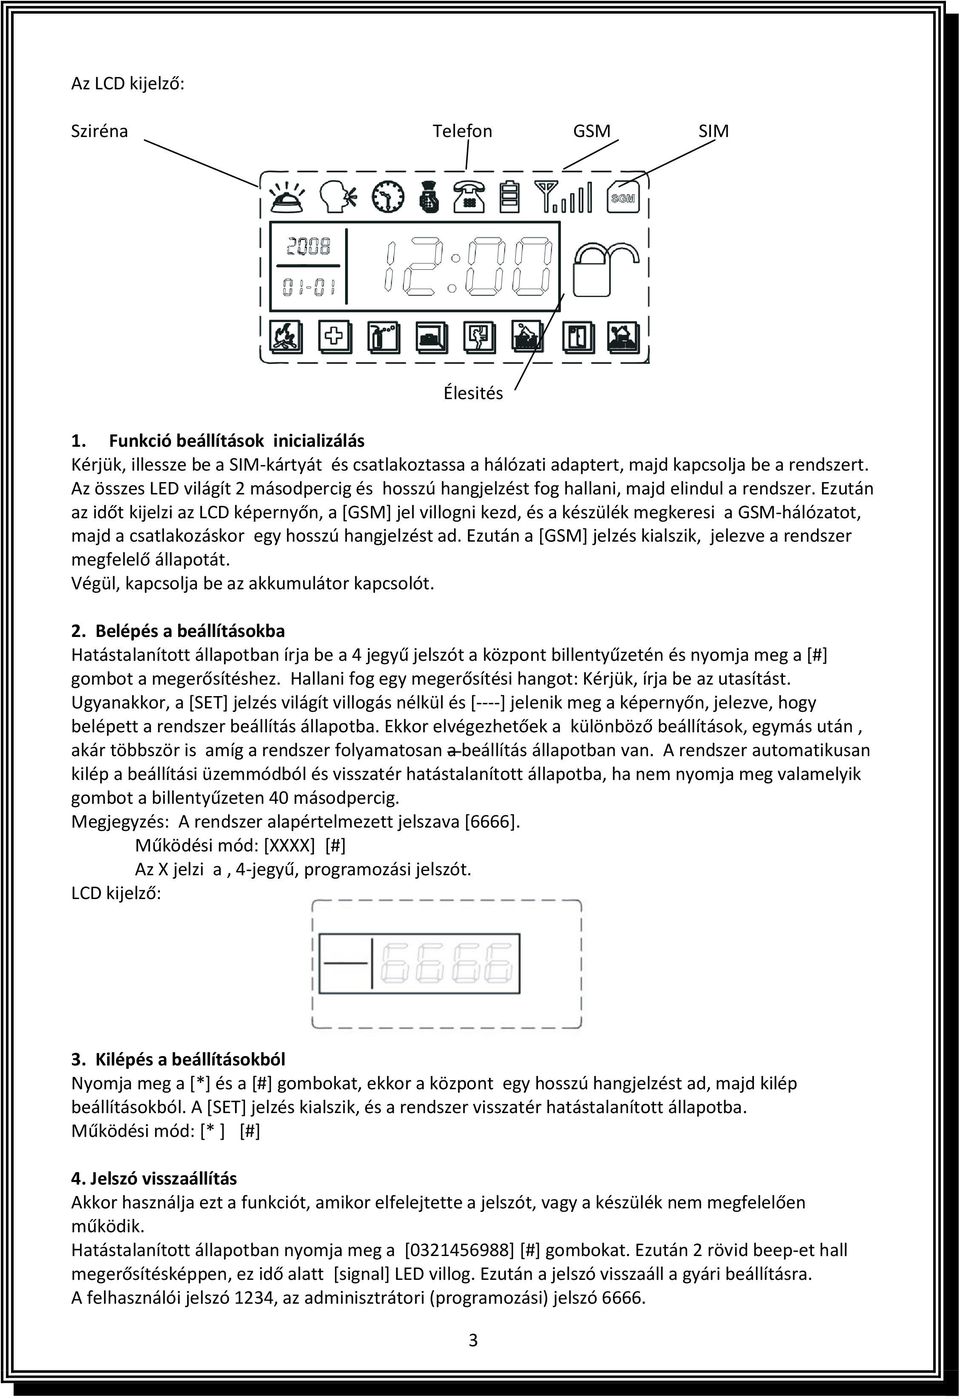 Kézikönyv CIKKSZÁM: LYD-111C - PDF Ingyenes letöltés